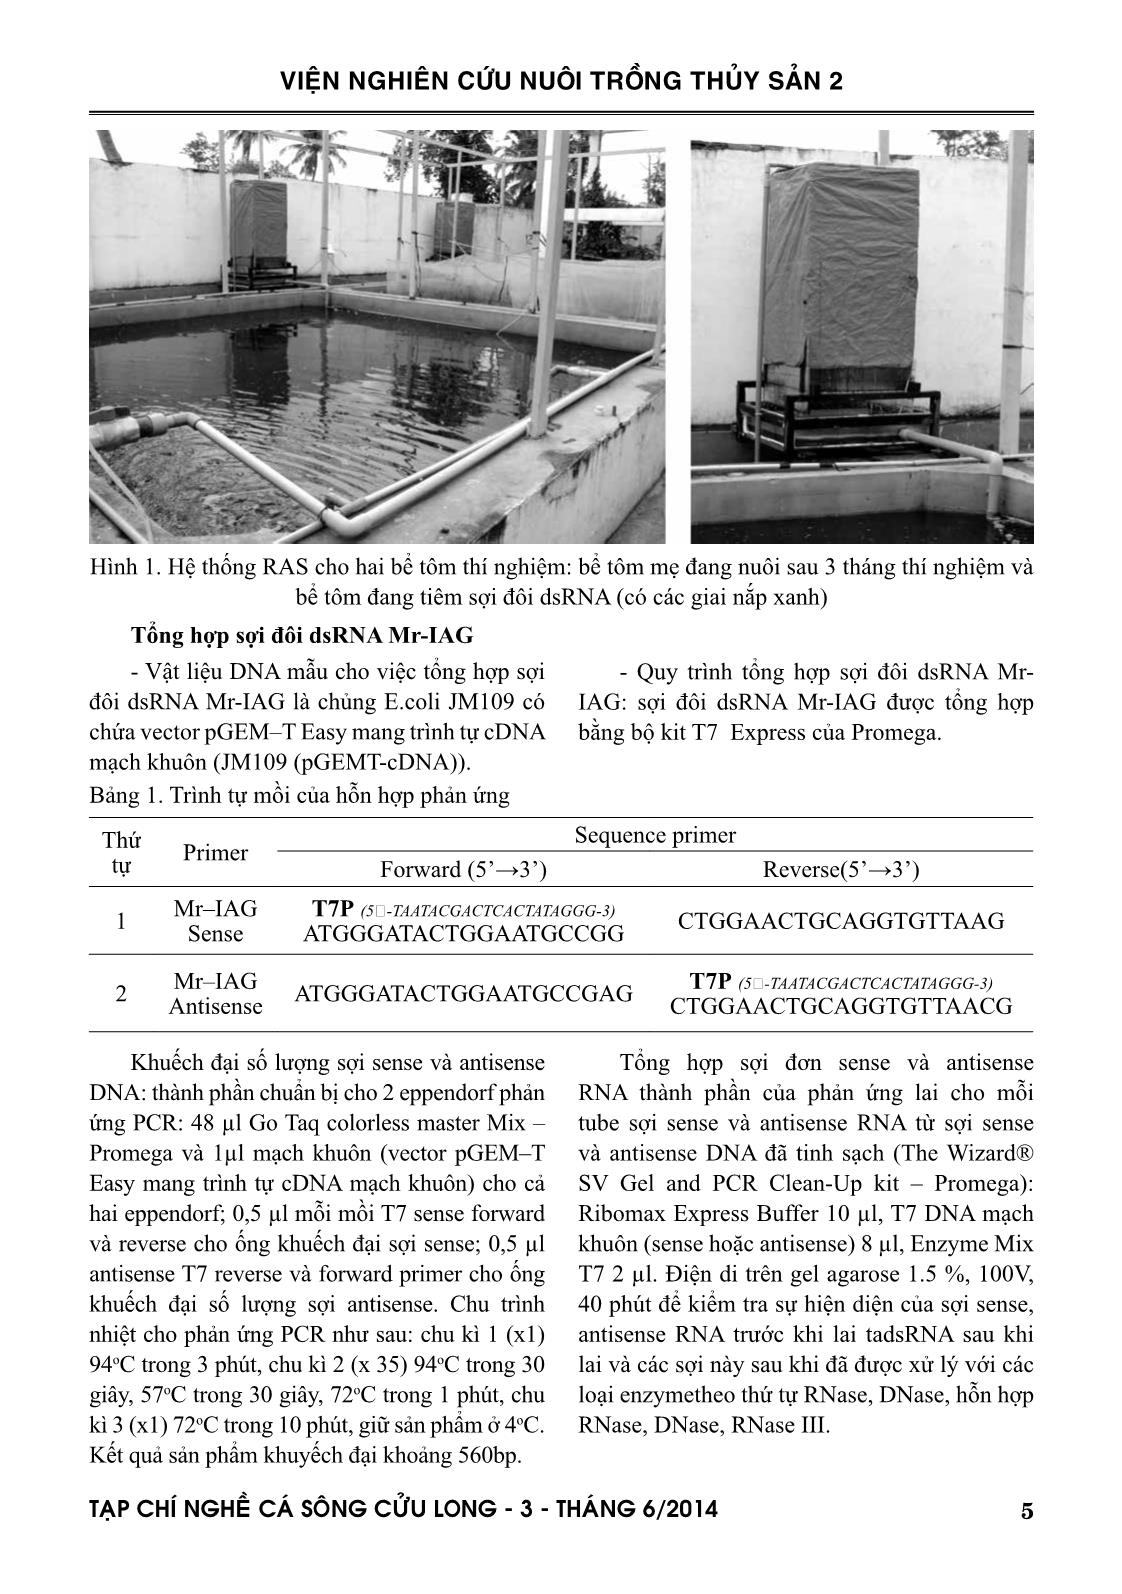 Tạp chí Nghề cá sông Cửu Long - Số 03/2014 trang 5